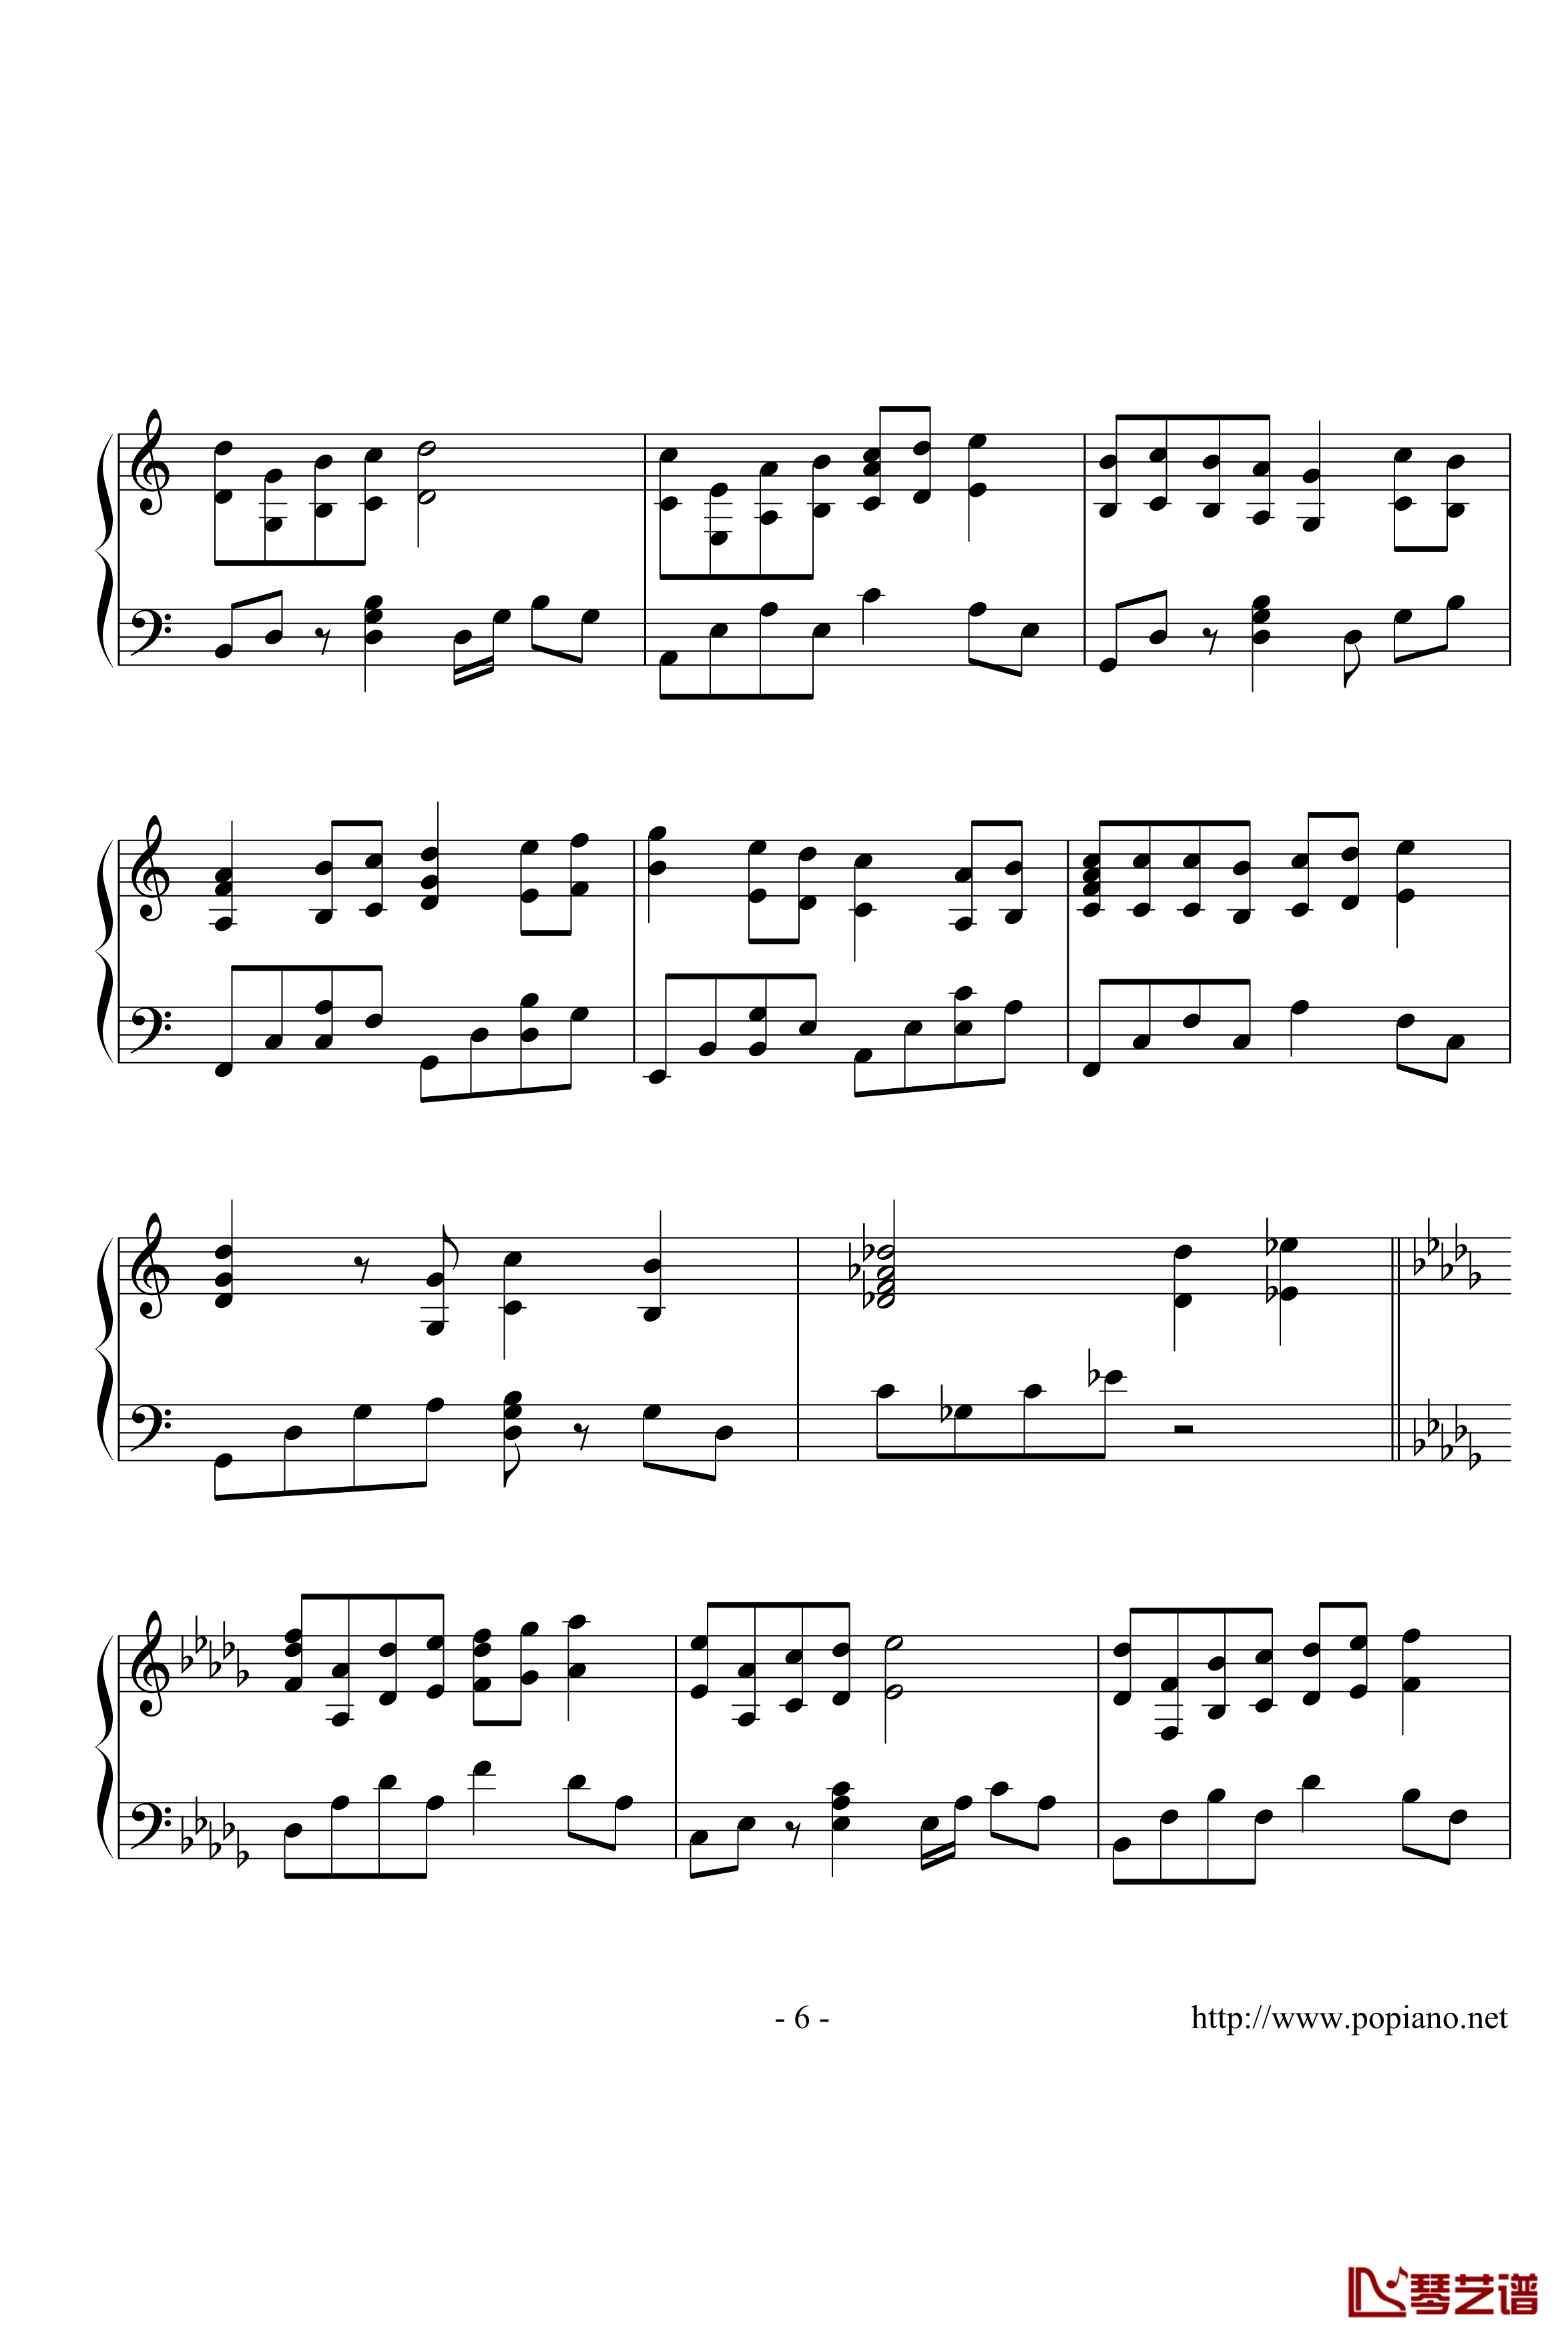 棉花糖钢琴谱-演奏版-至上励合6